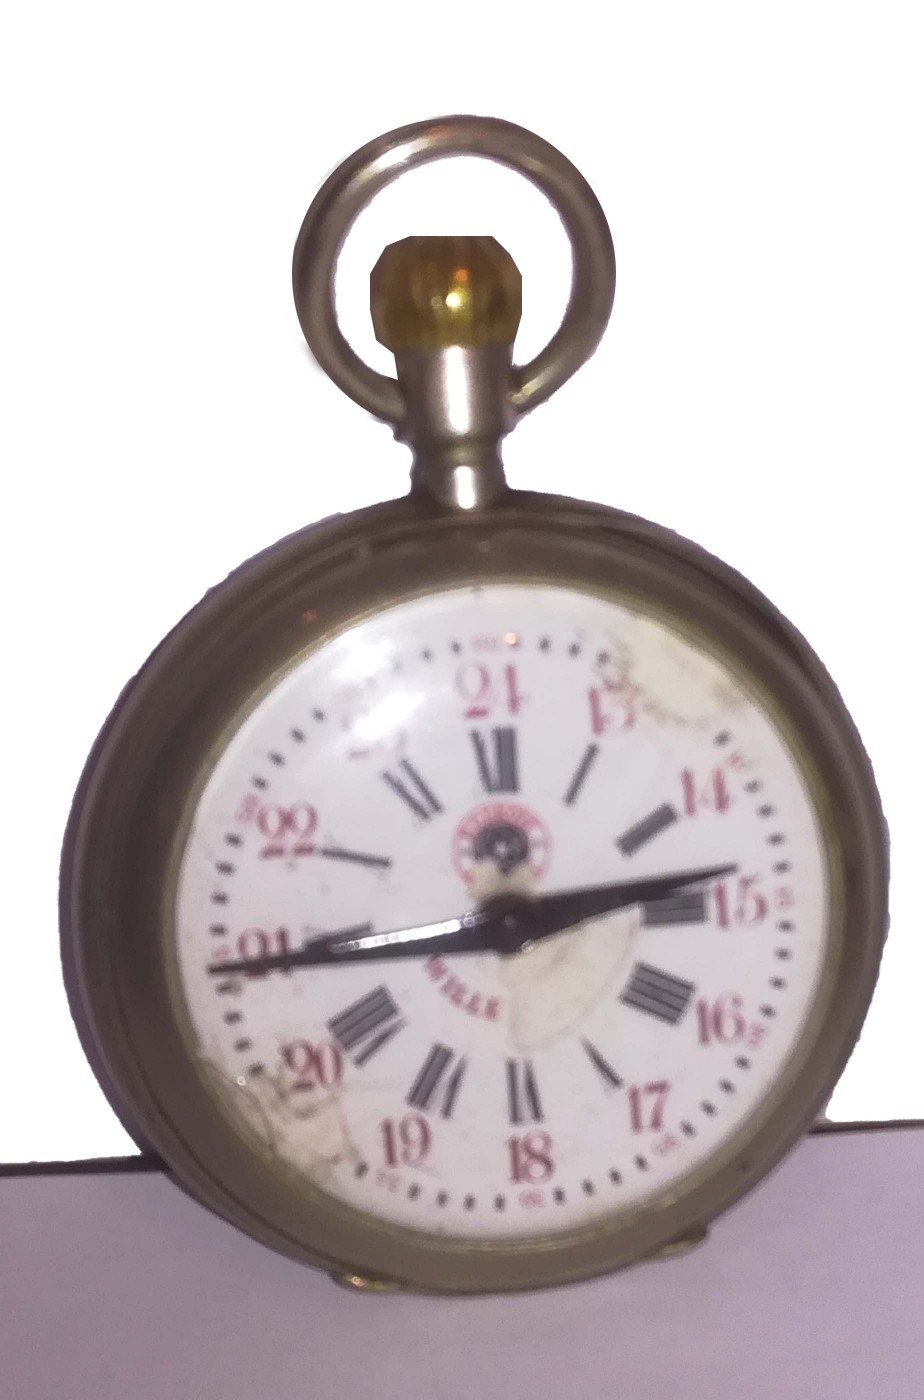 Orologio da taschino vintage stile anni 20 di metallo non funzionante oggetto di scena